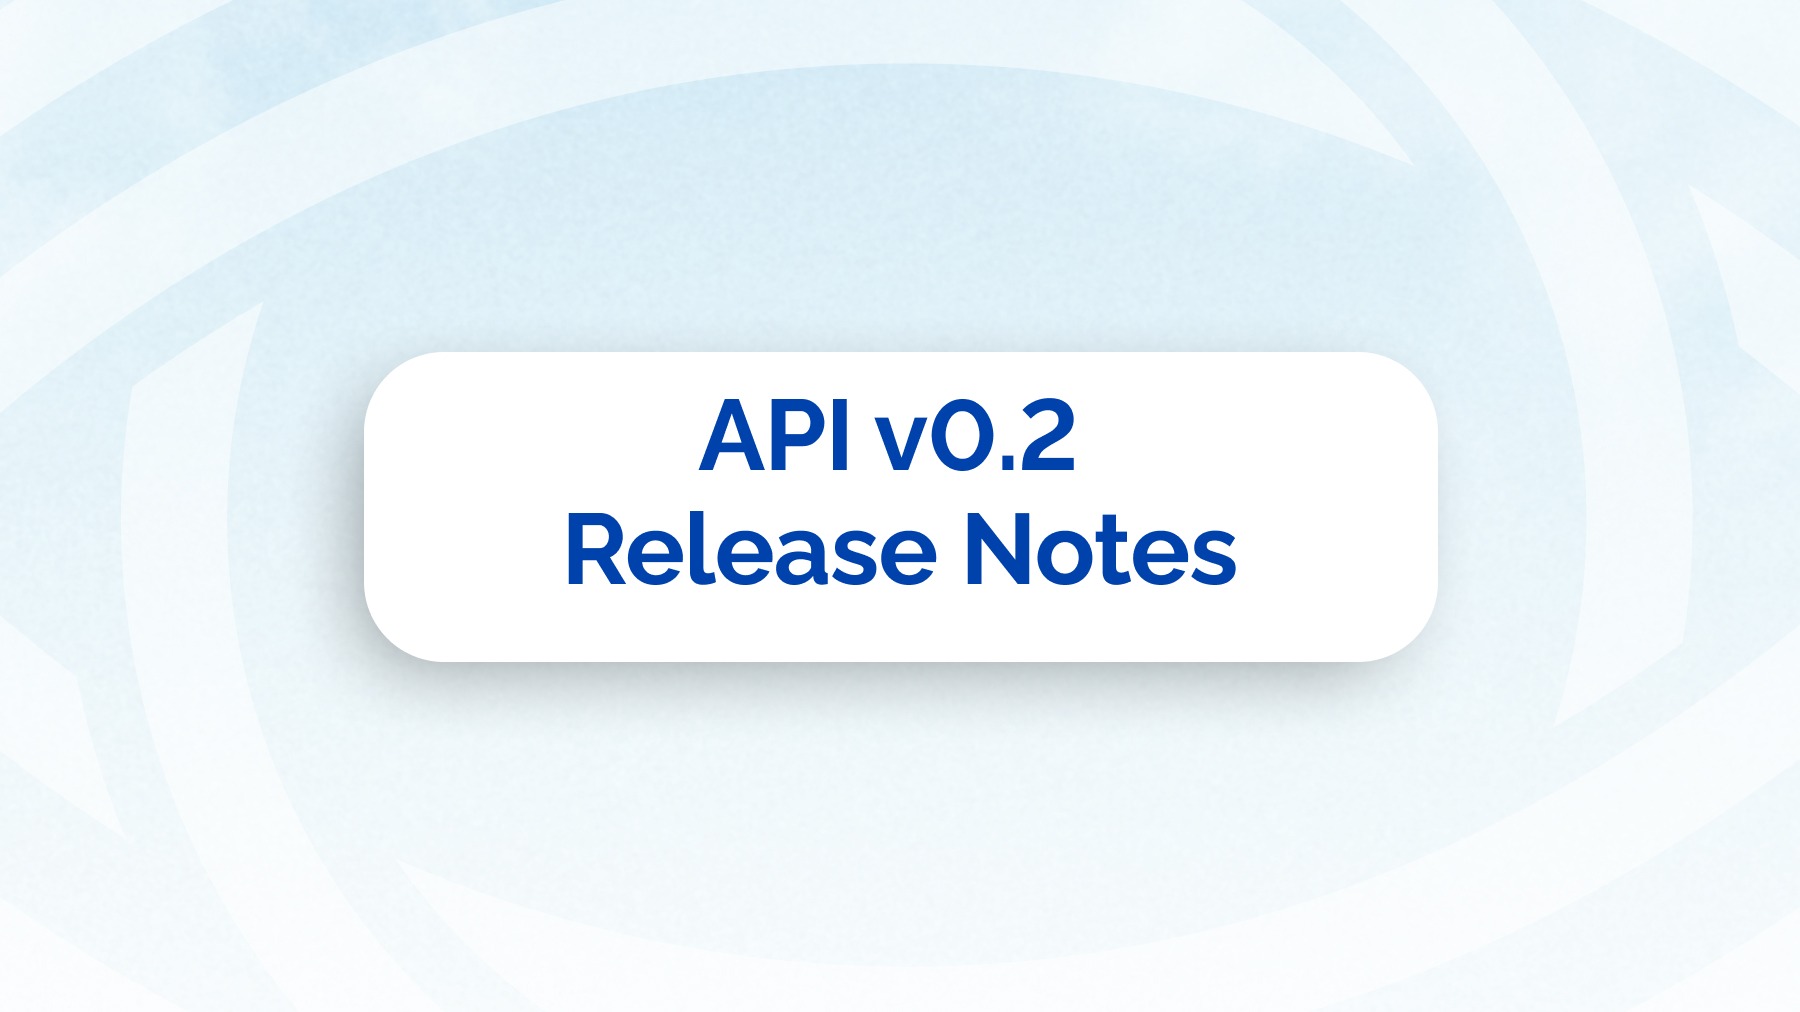 API Release Notes v0.2